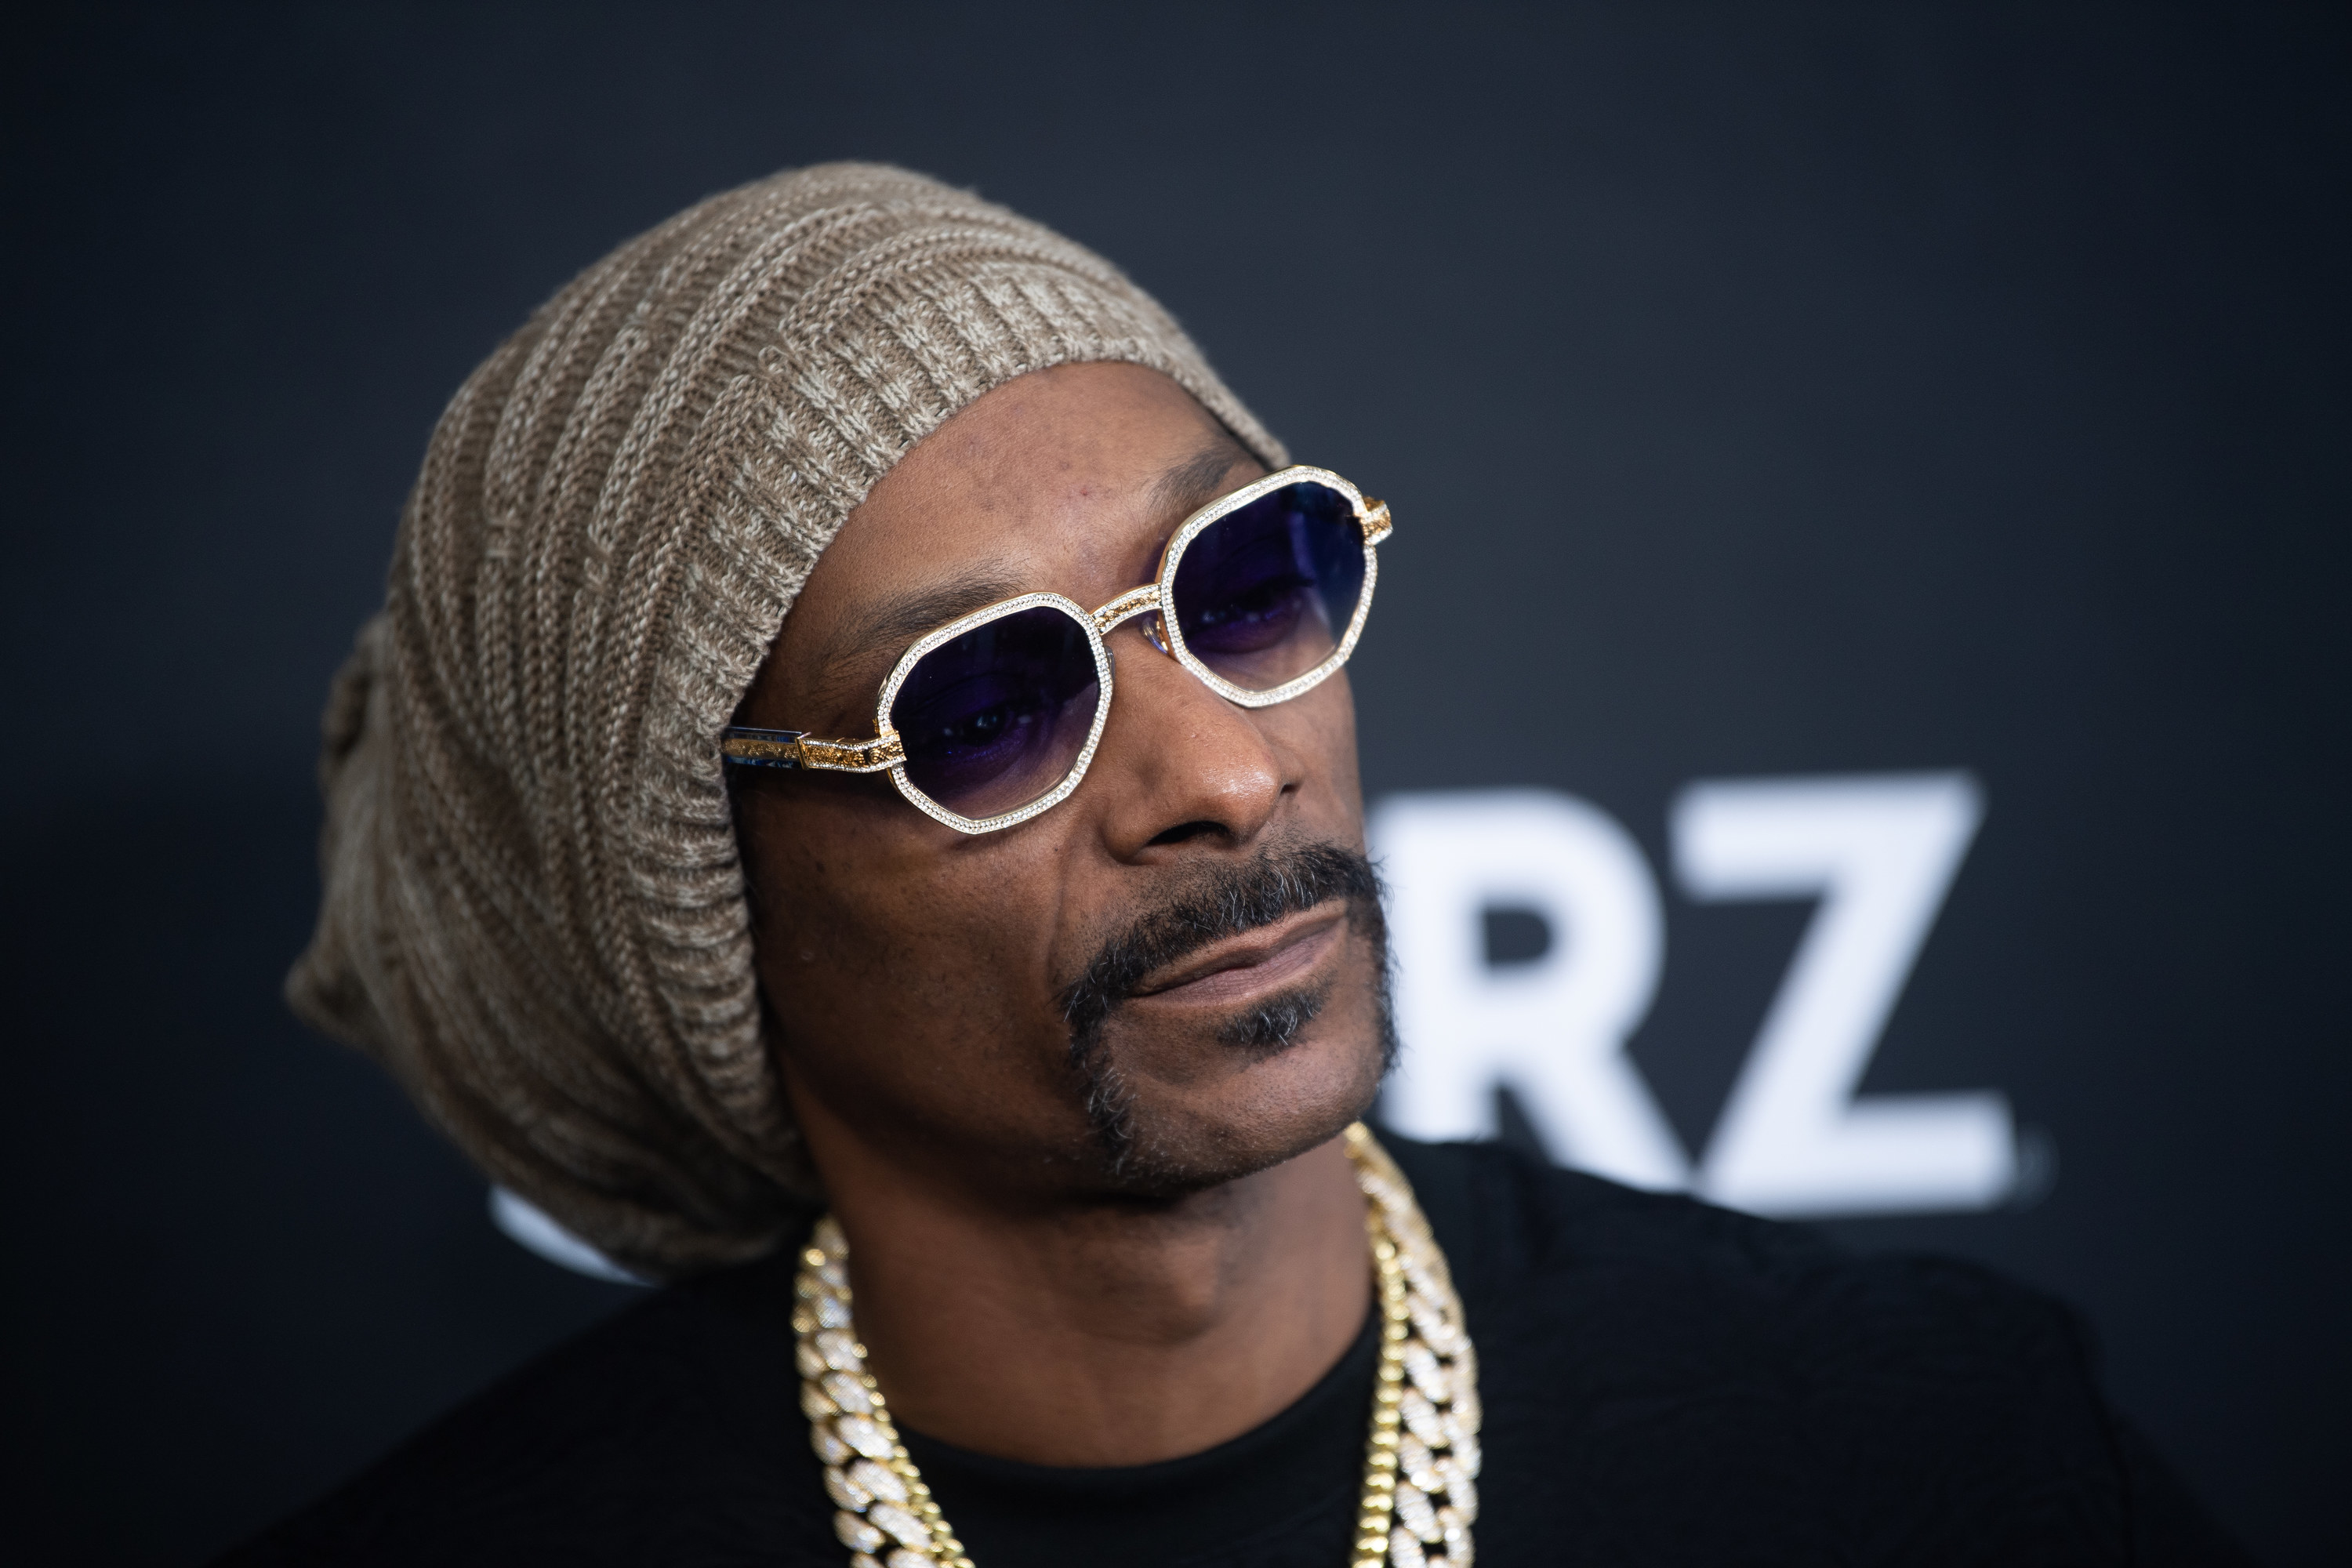 A closeup of Snoop